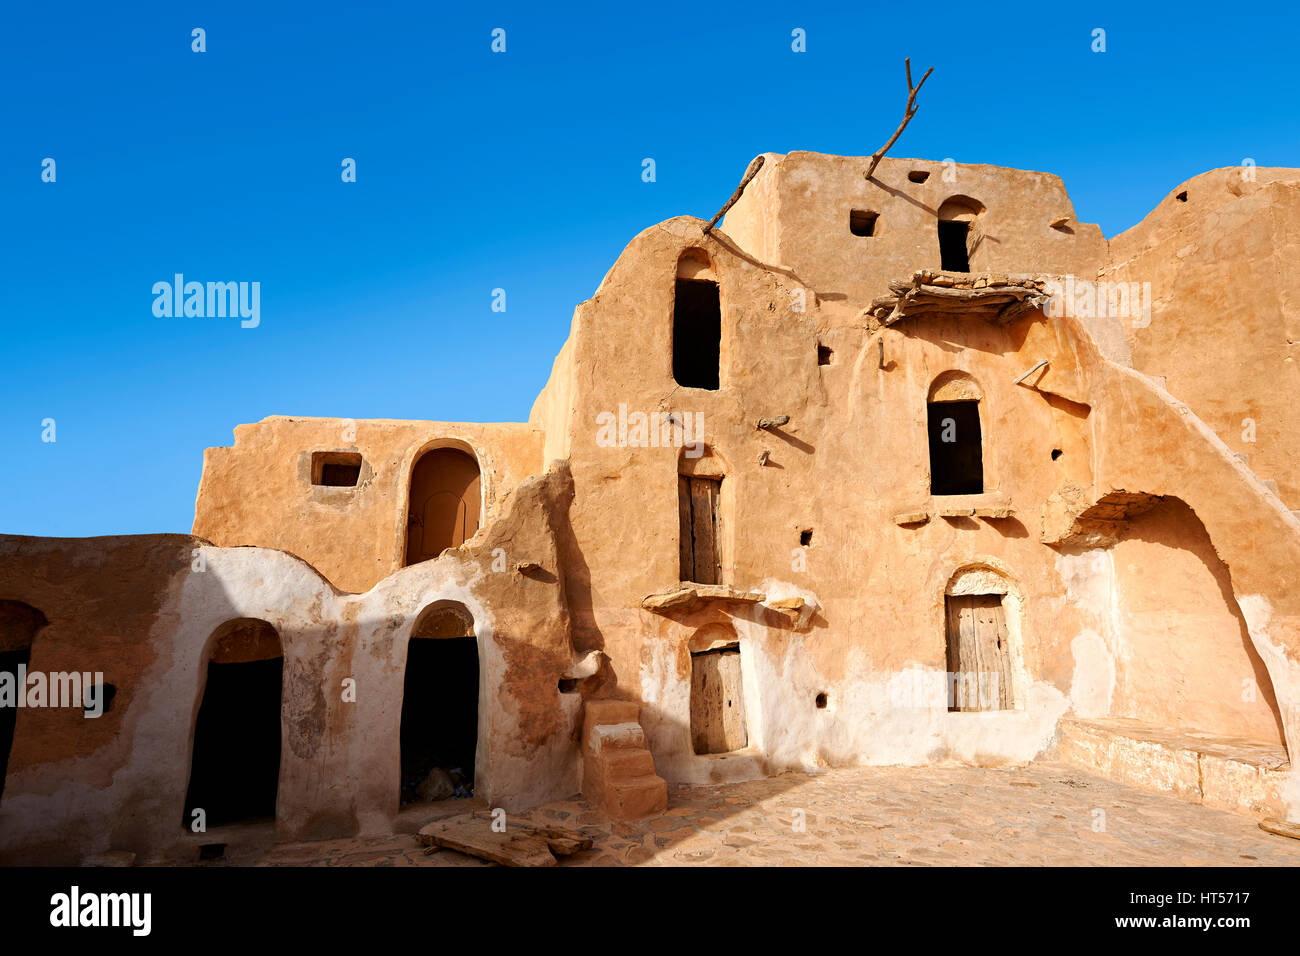 Ksar Ouled Soltane, un tradizionale berbera del Sahara e arabi di adobe fortificata granaio voltati cantine, Tunisia Foto Stock